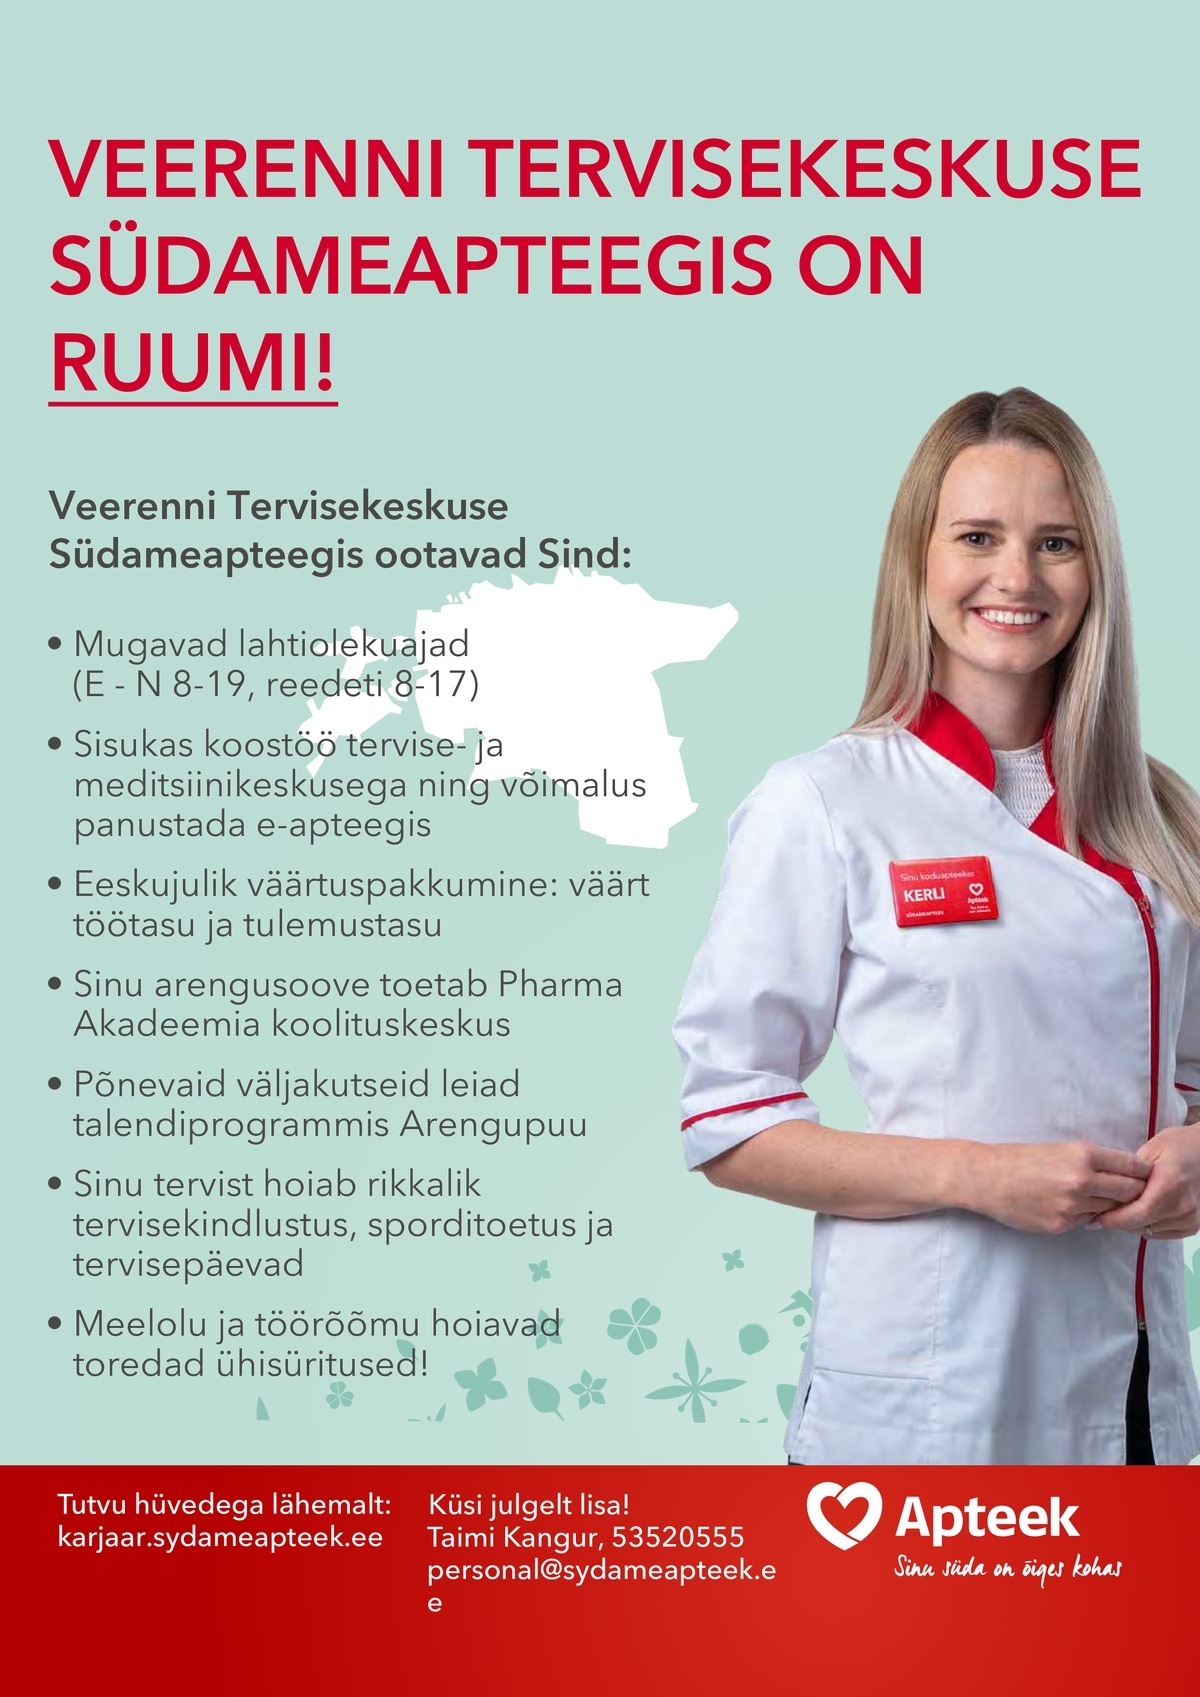 CVKeskus.ee klient Veerenni Tervisekeskuse Südameapteek ootab erialatöötajat!